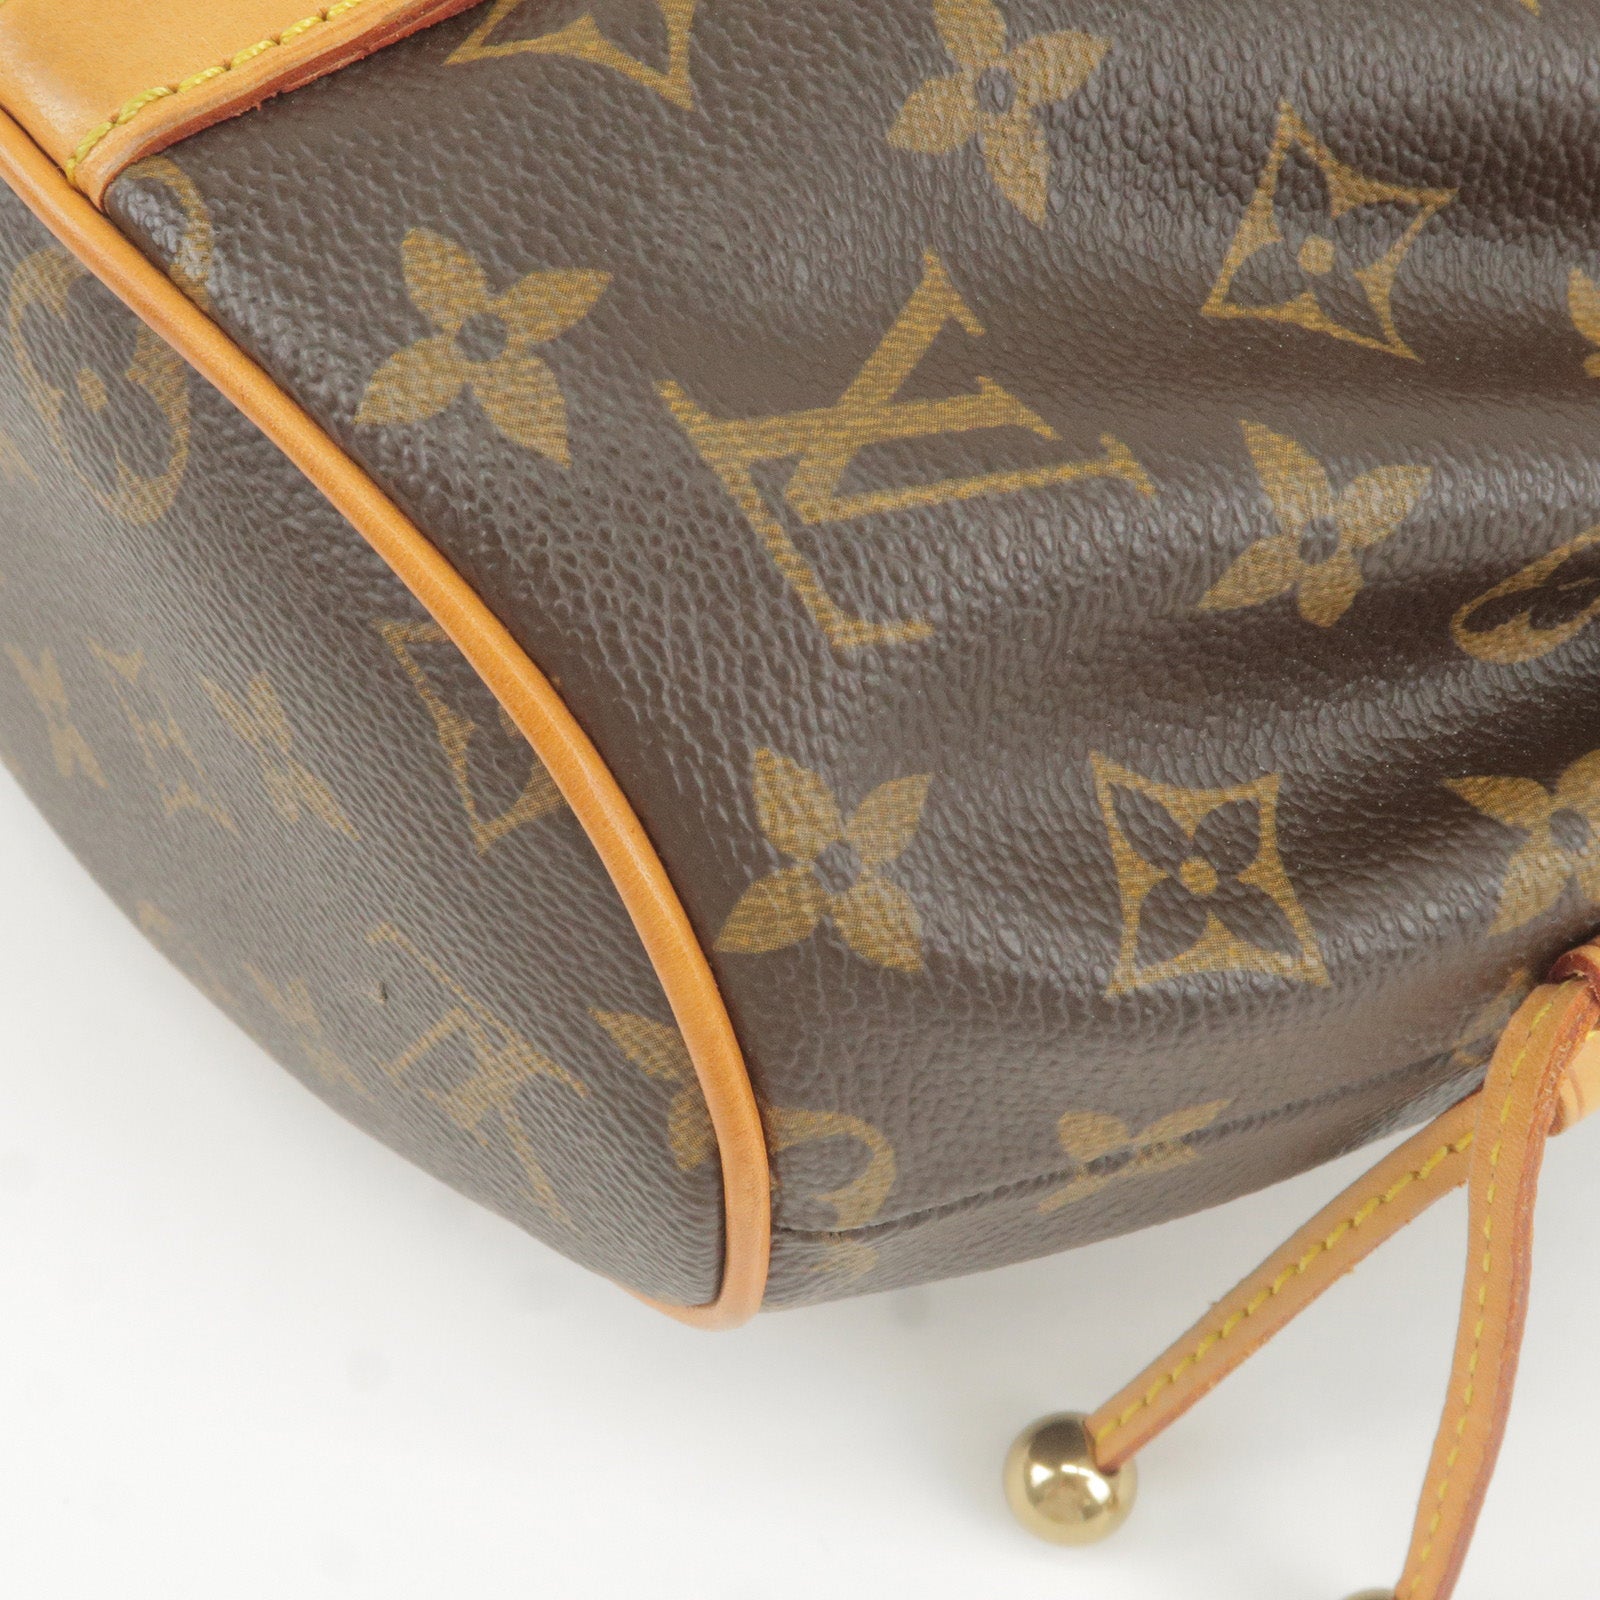 Louis-Vuitton-Monogram-Theda-PM-Hand-Bag-Purse – dct-ep_vintage